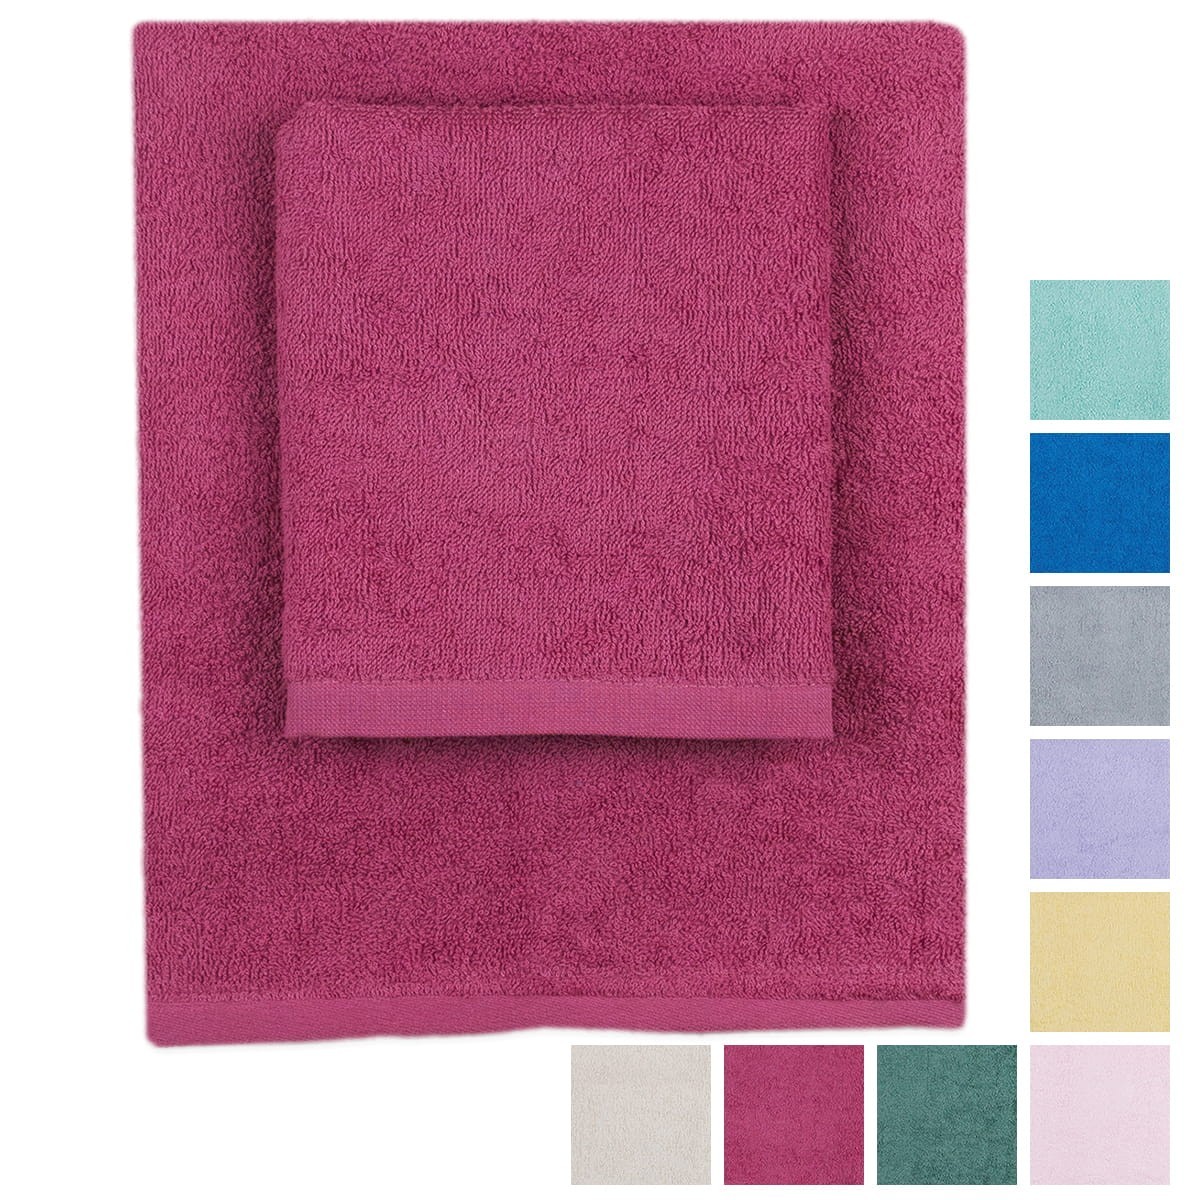 Colors - coppia asciugamani tintunita 380gr - Corredo Italiano®